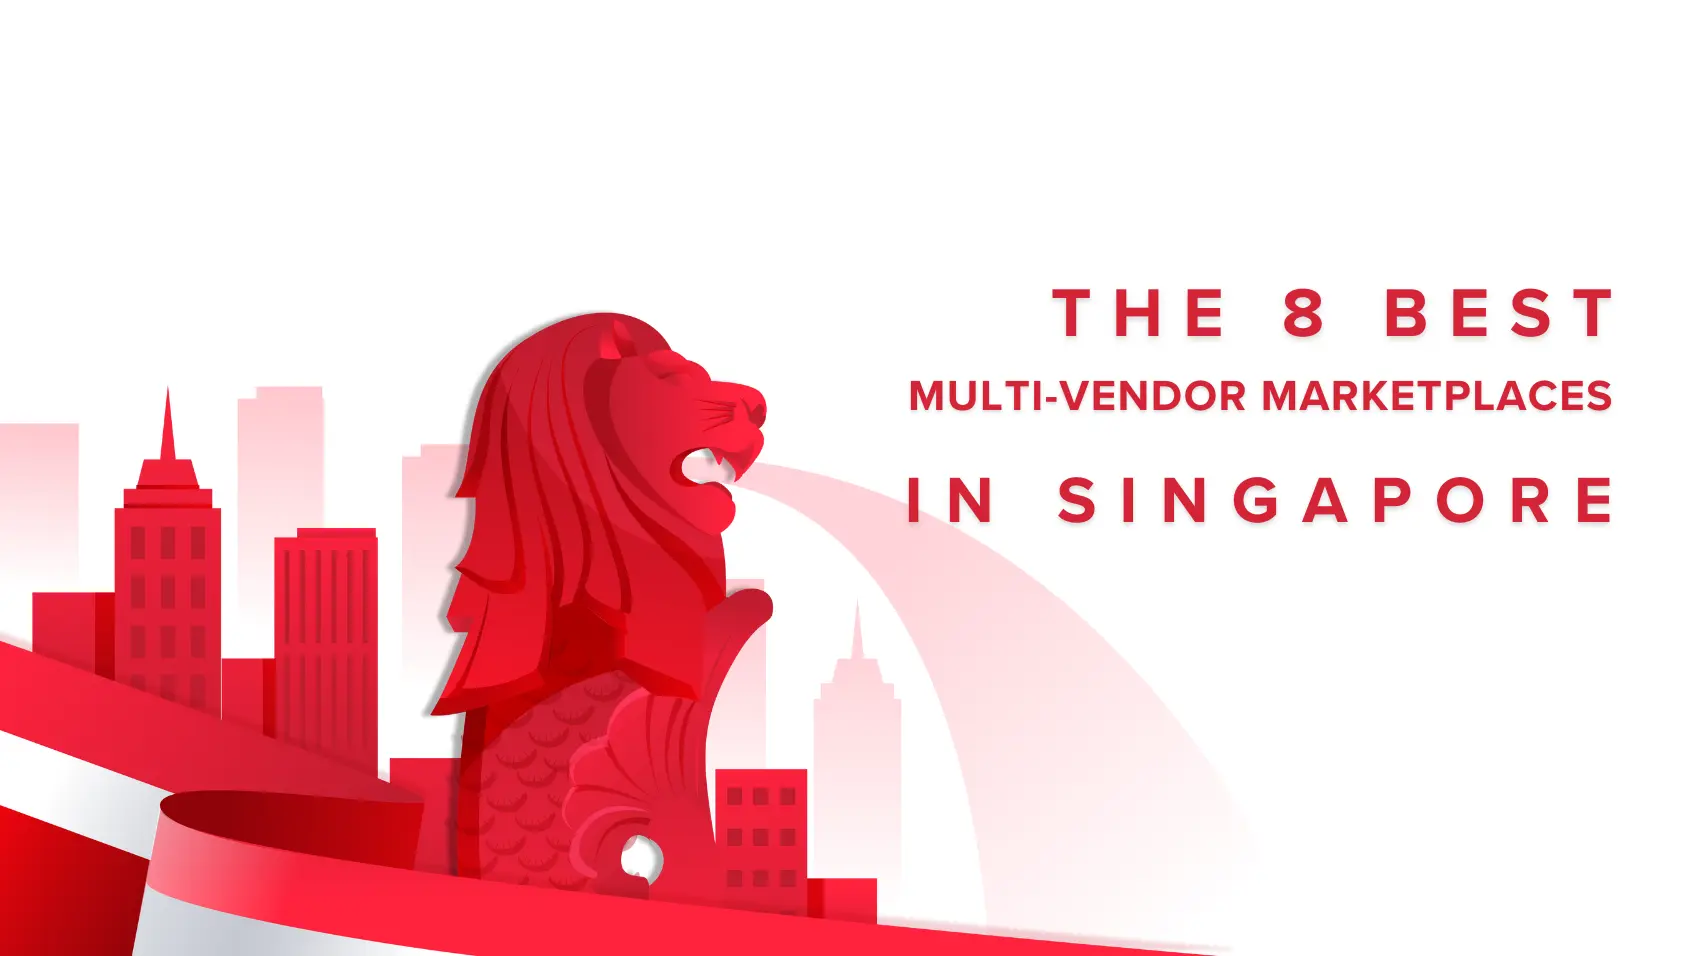 Top 8 Multi-vendor Marketplaces in Singapore